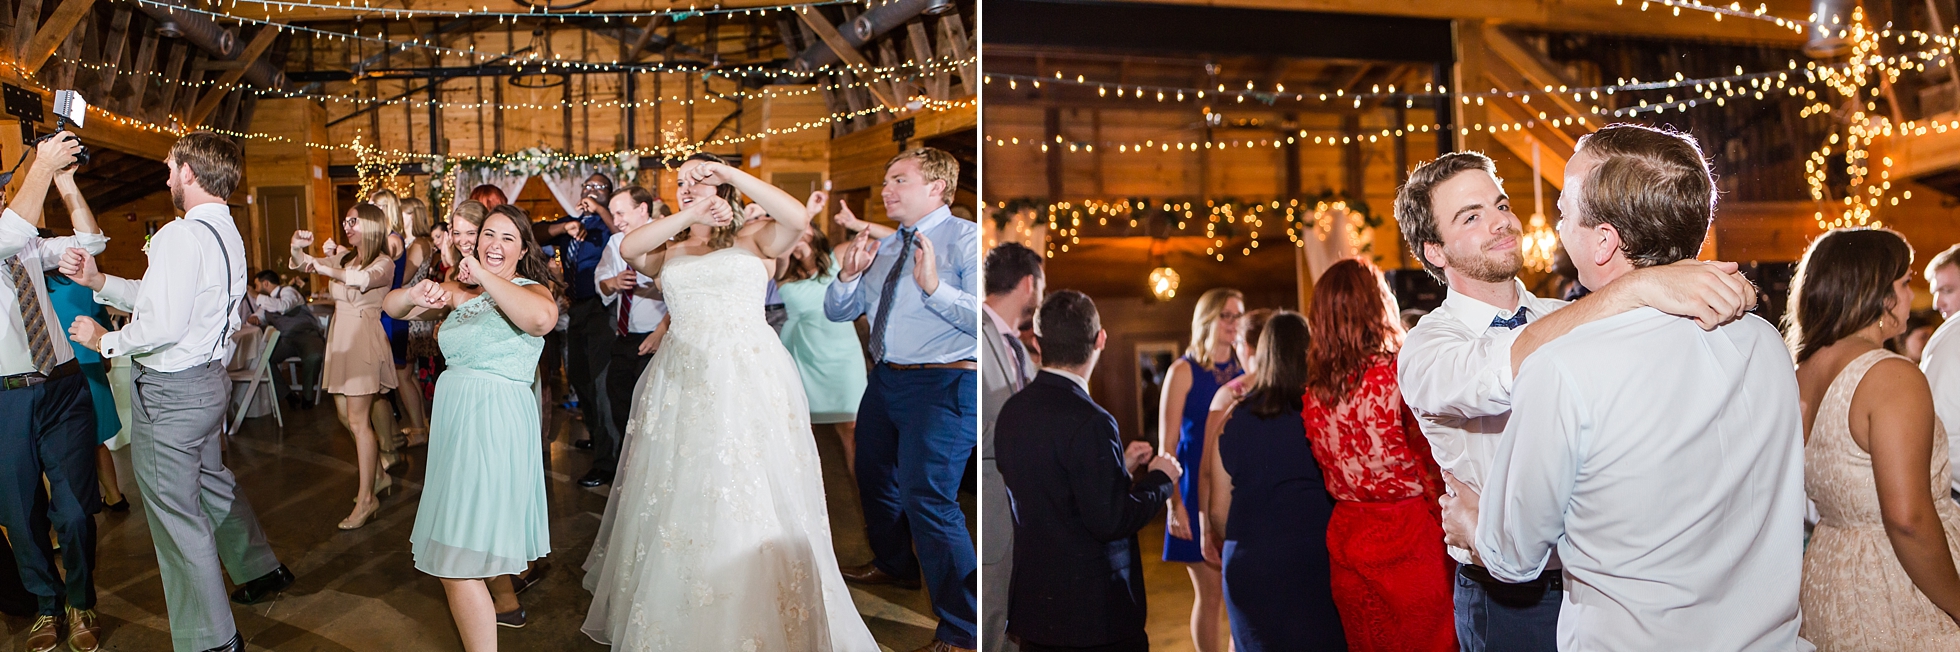 dancing 9 oaks farm barn wedding reception